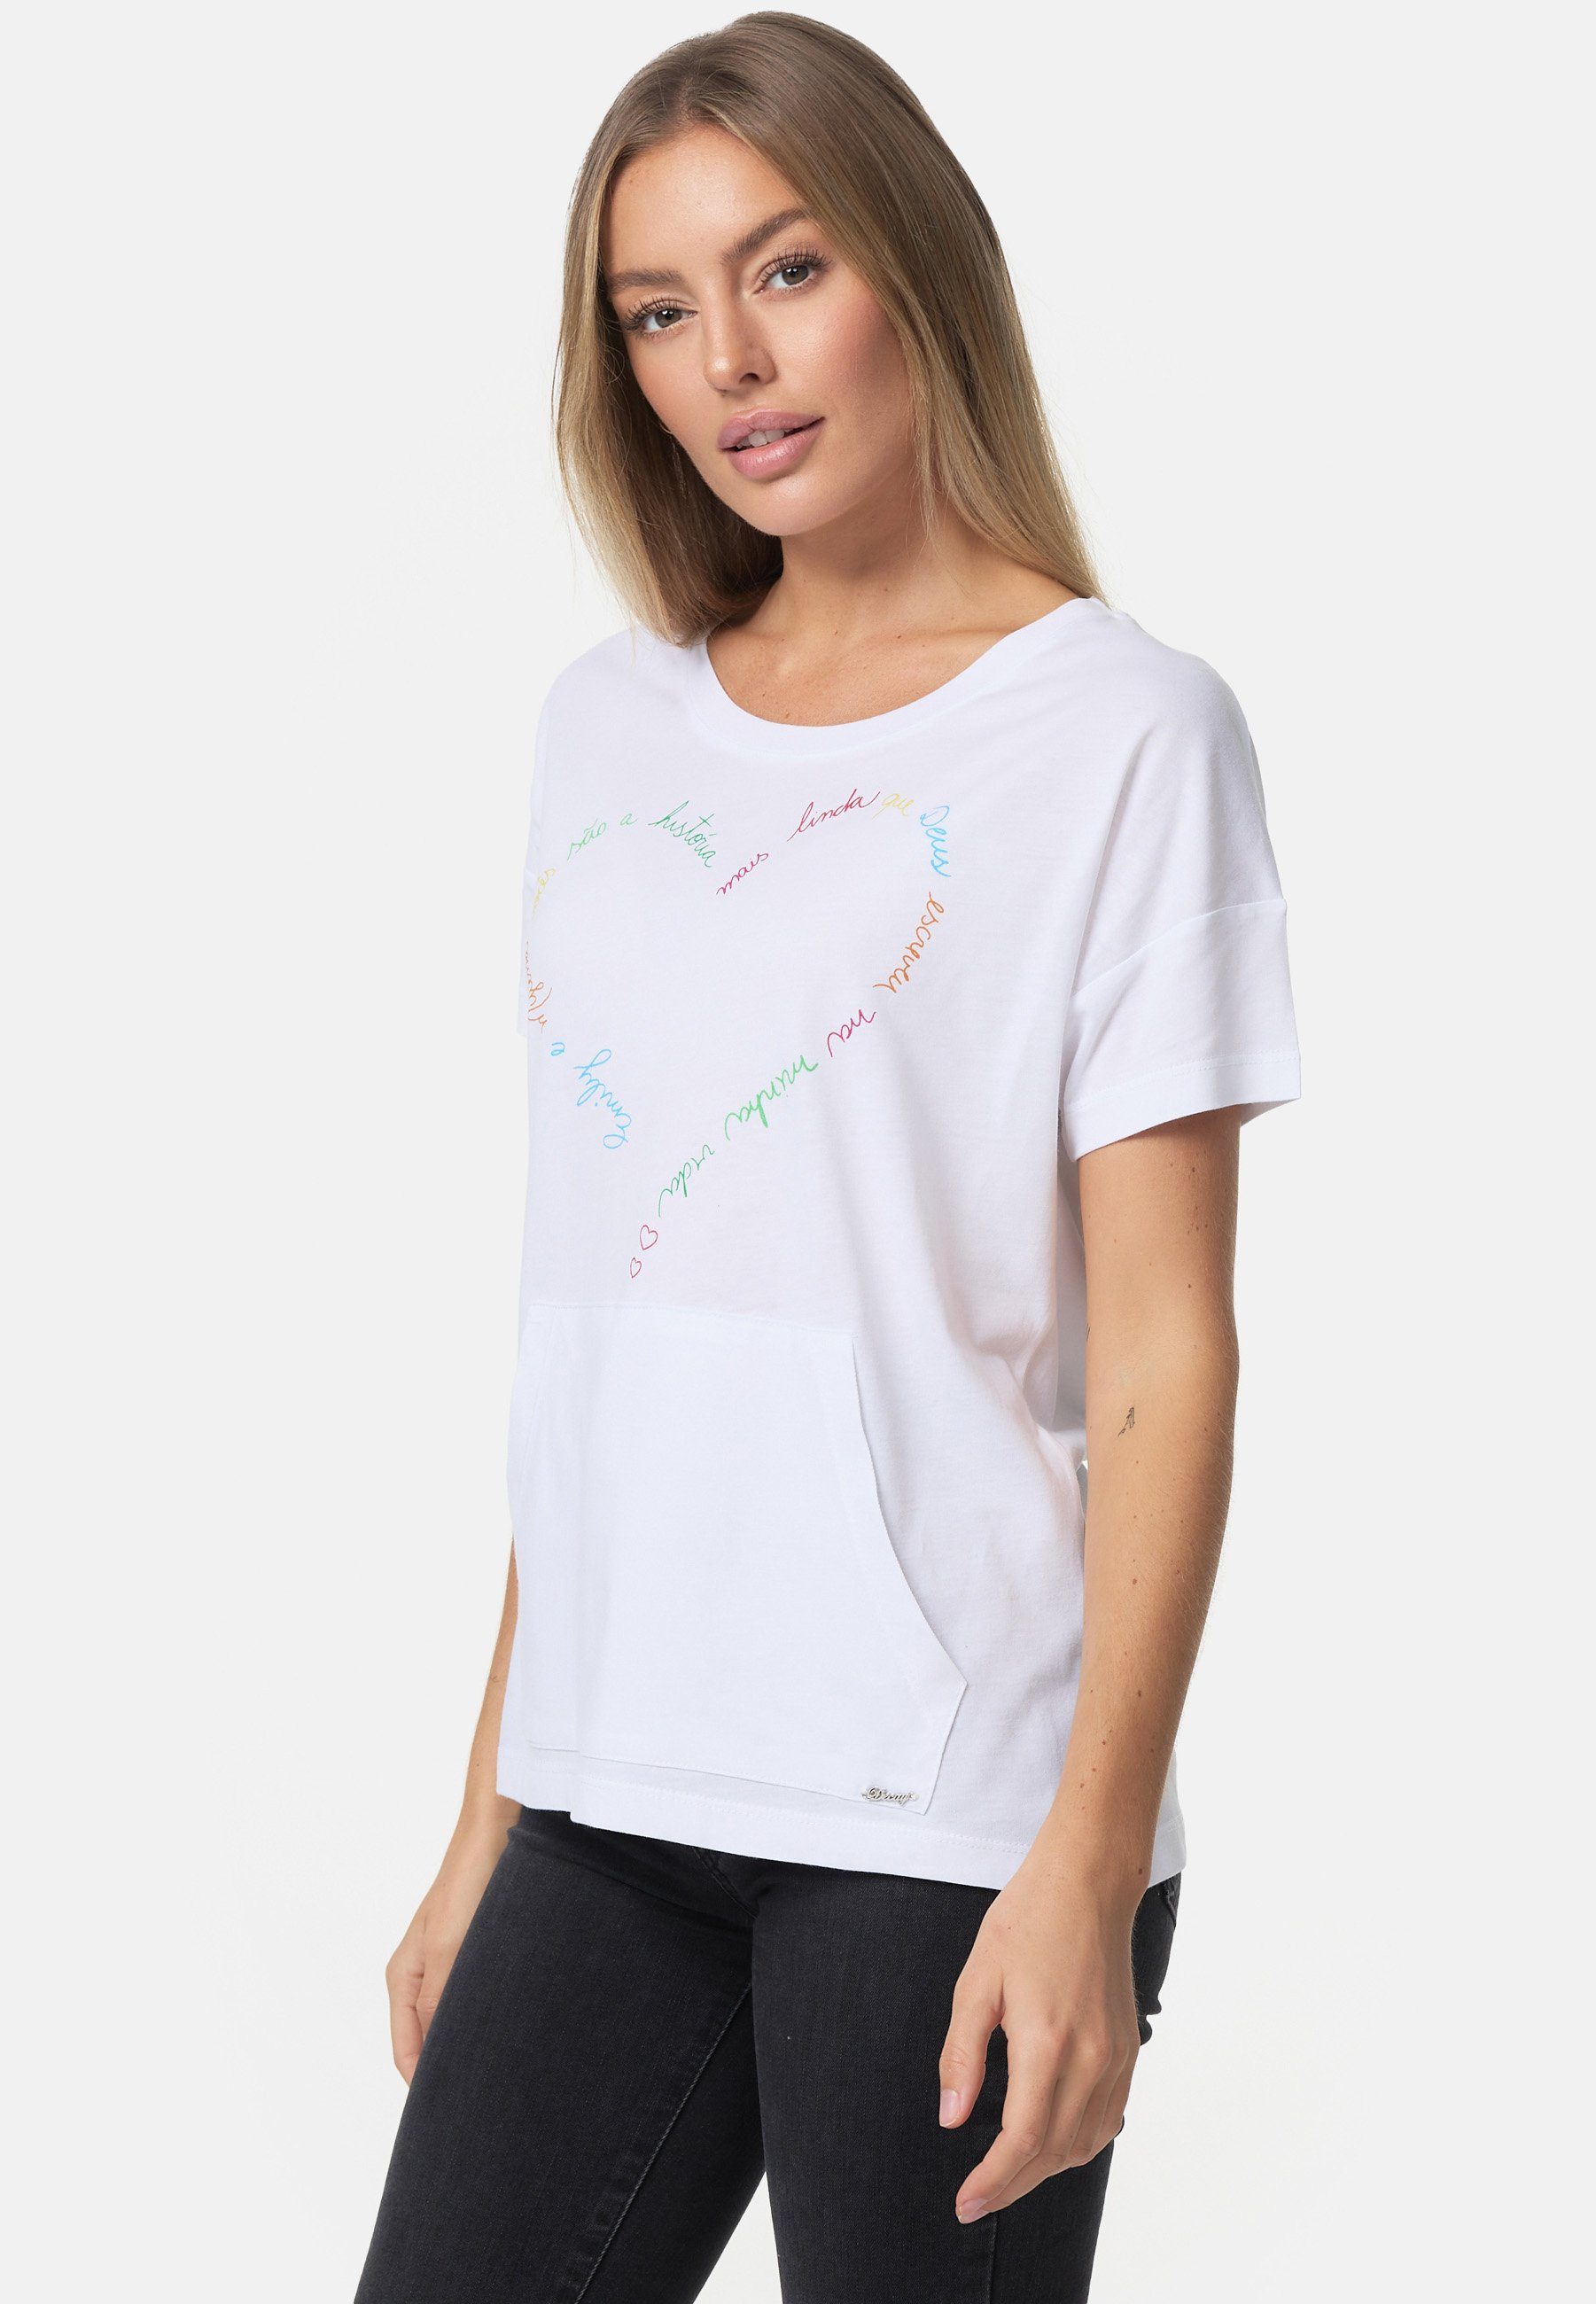 Decay T-Shirt mit schönem Herz-Print weiß-mehrfarbig